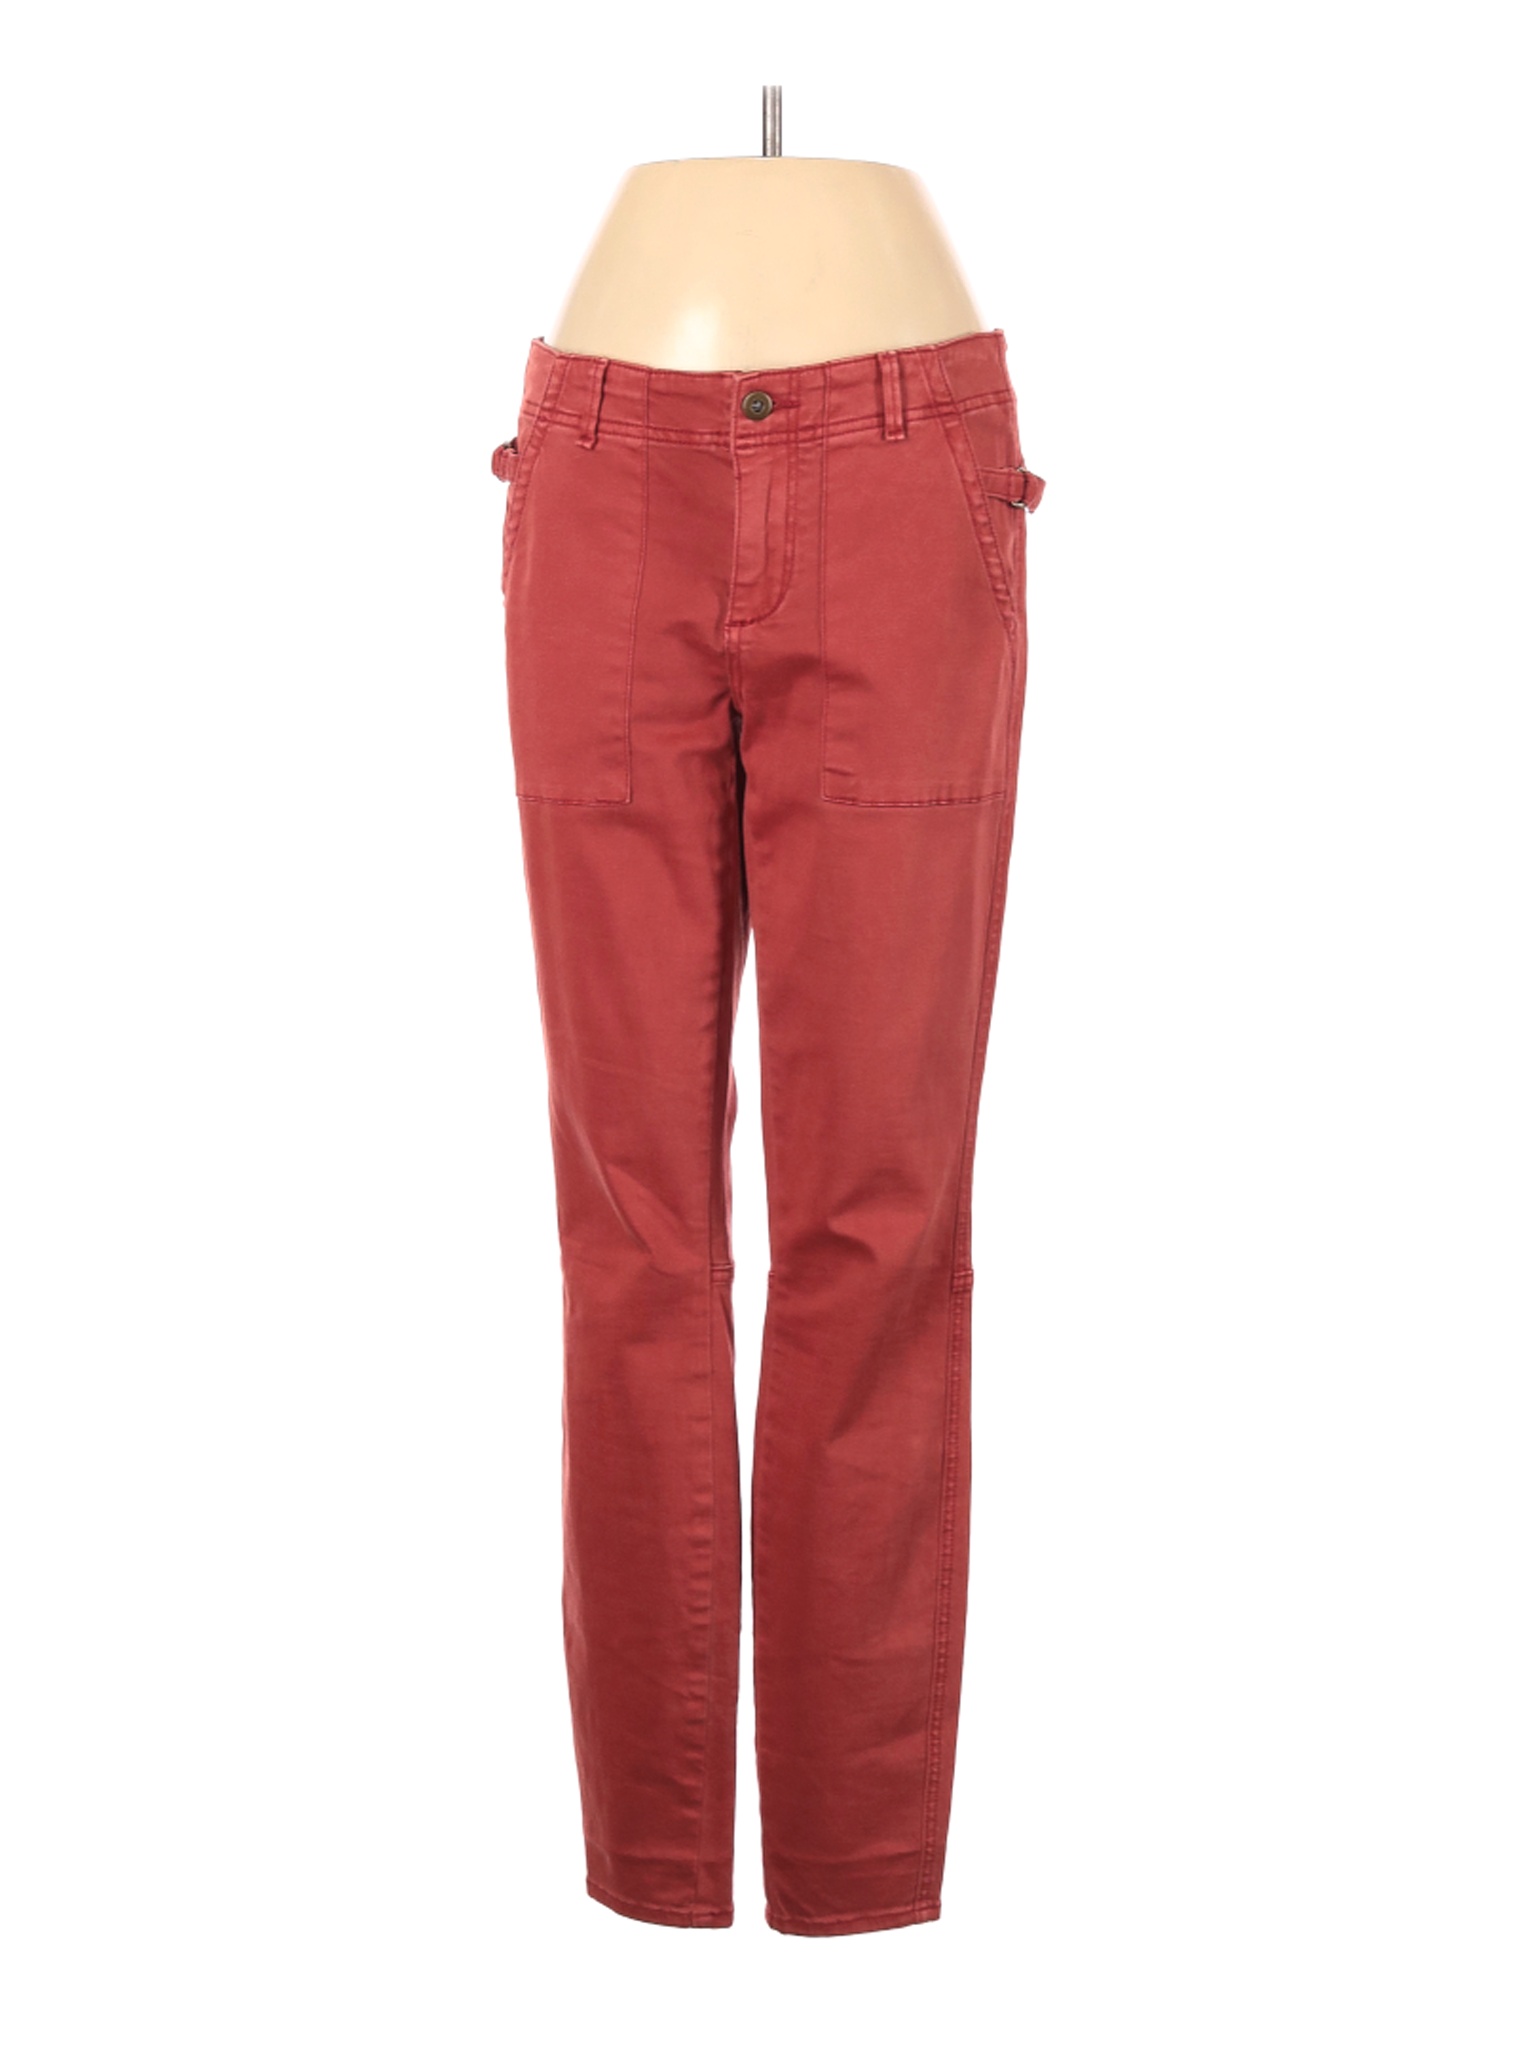 Hei Hei Women Red Jeans 26W | eBay